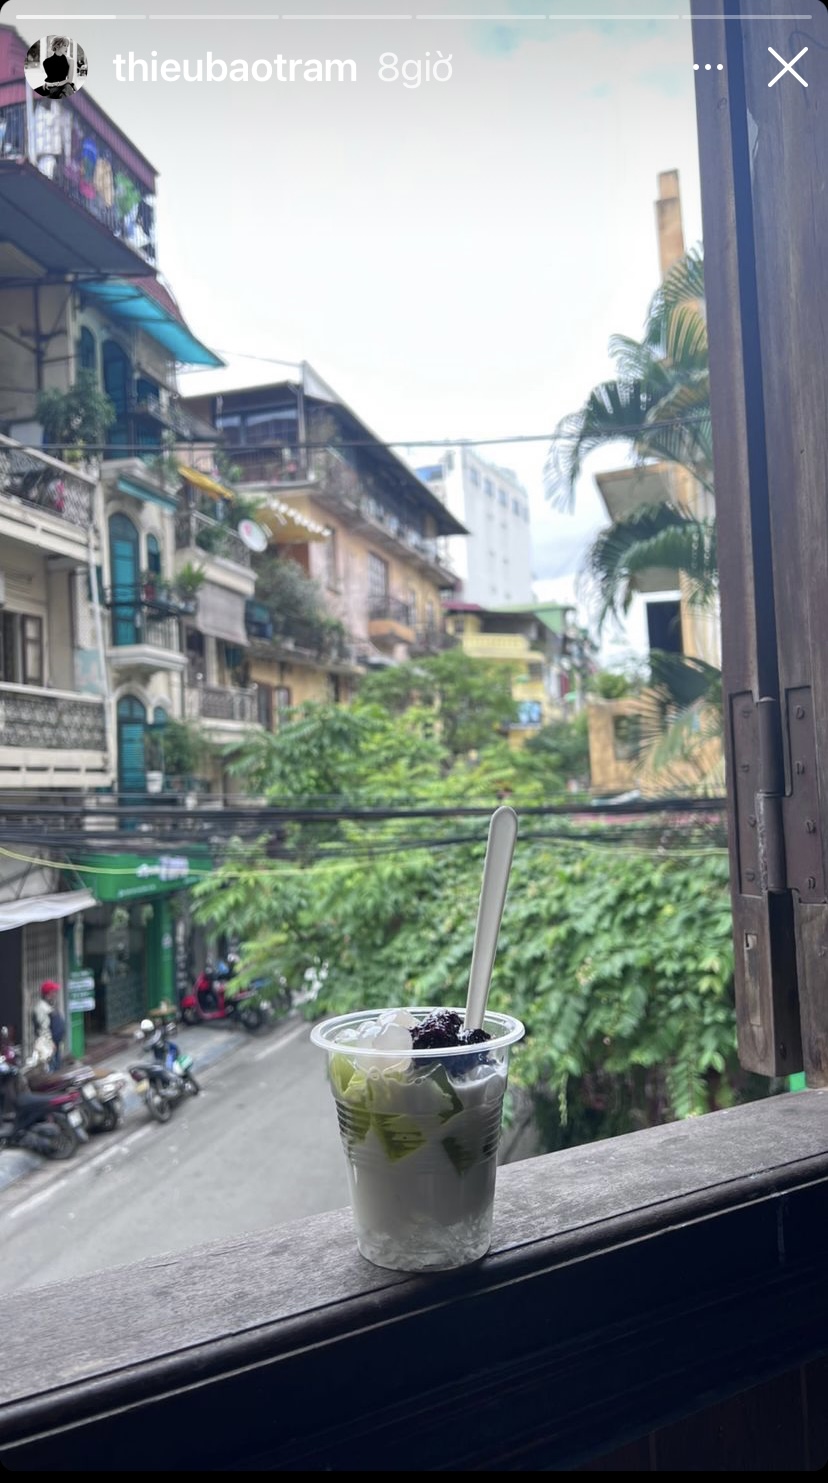 Giữa cái lạnh của Hà Nội, Thiều Bảo Trâm đã có cơ hội ghé thăm quán sữa chua thạch lá nếp được nhiều người biết đến ở thủ đô.